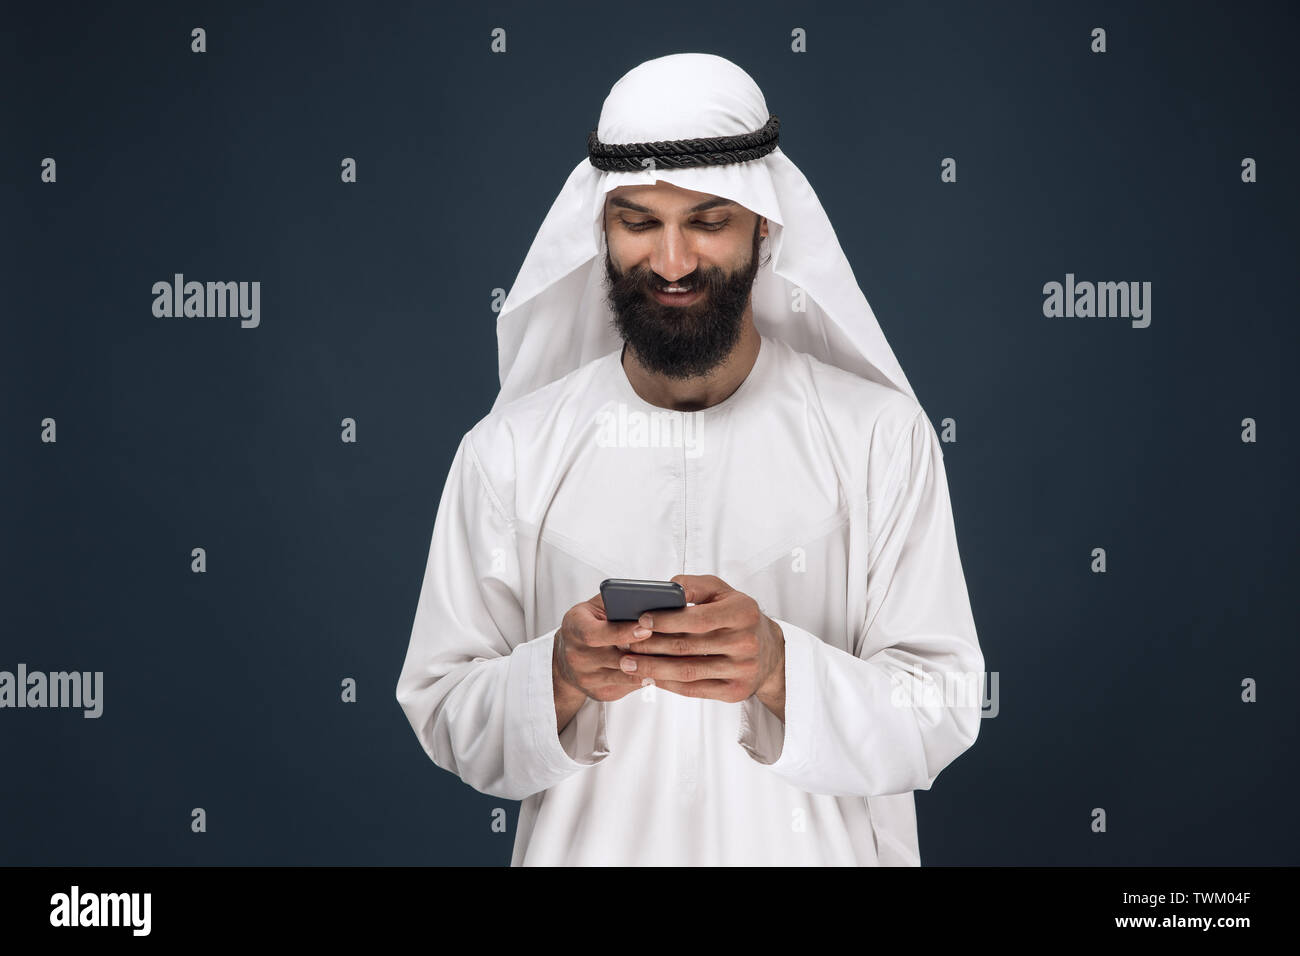 Араб в шоке. Араб на синем фоне. Saudi man Photography. Телефон арабов